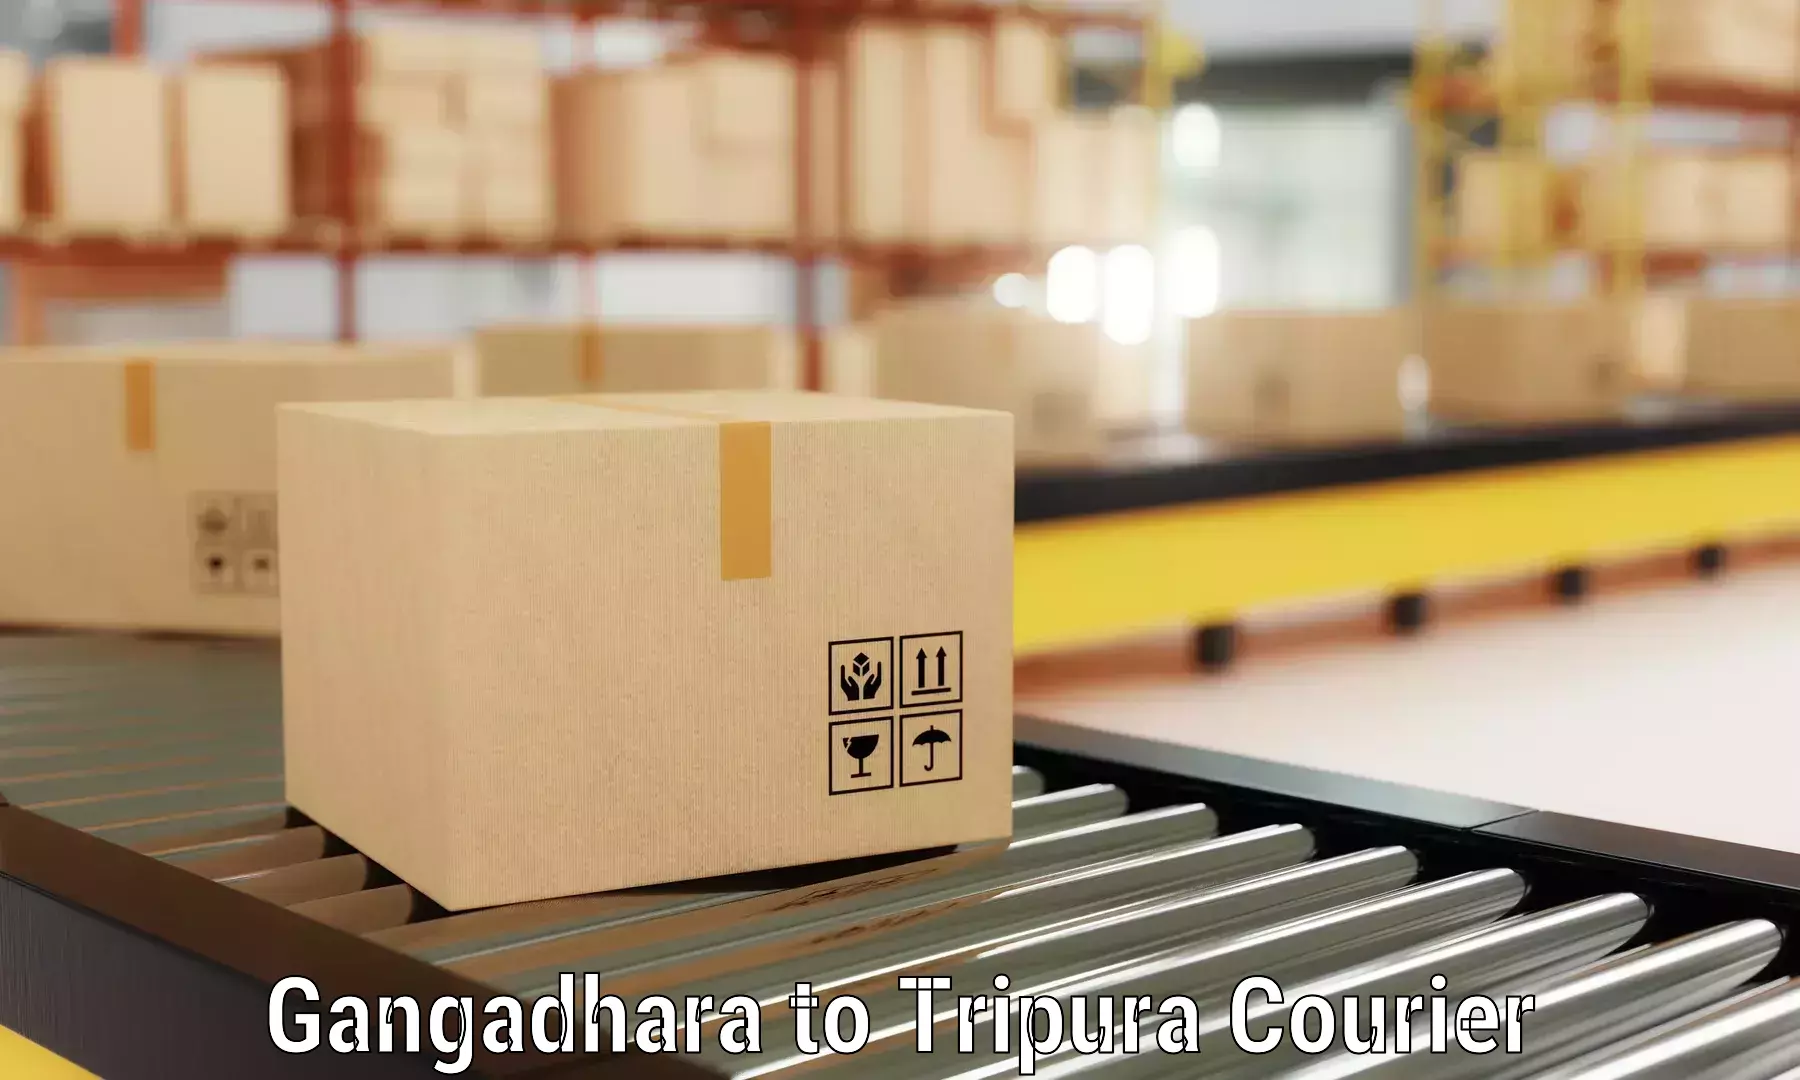 Furniture transport experts Gangadhara to Radhakishorepur